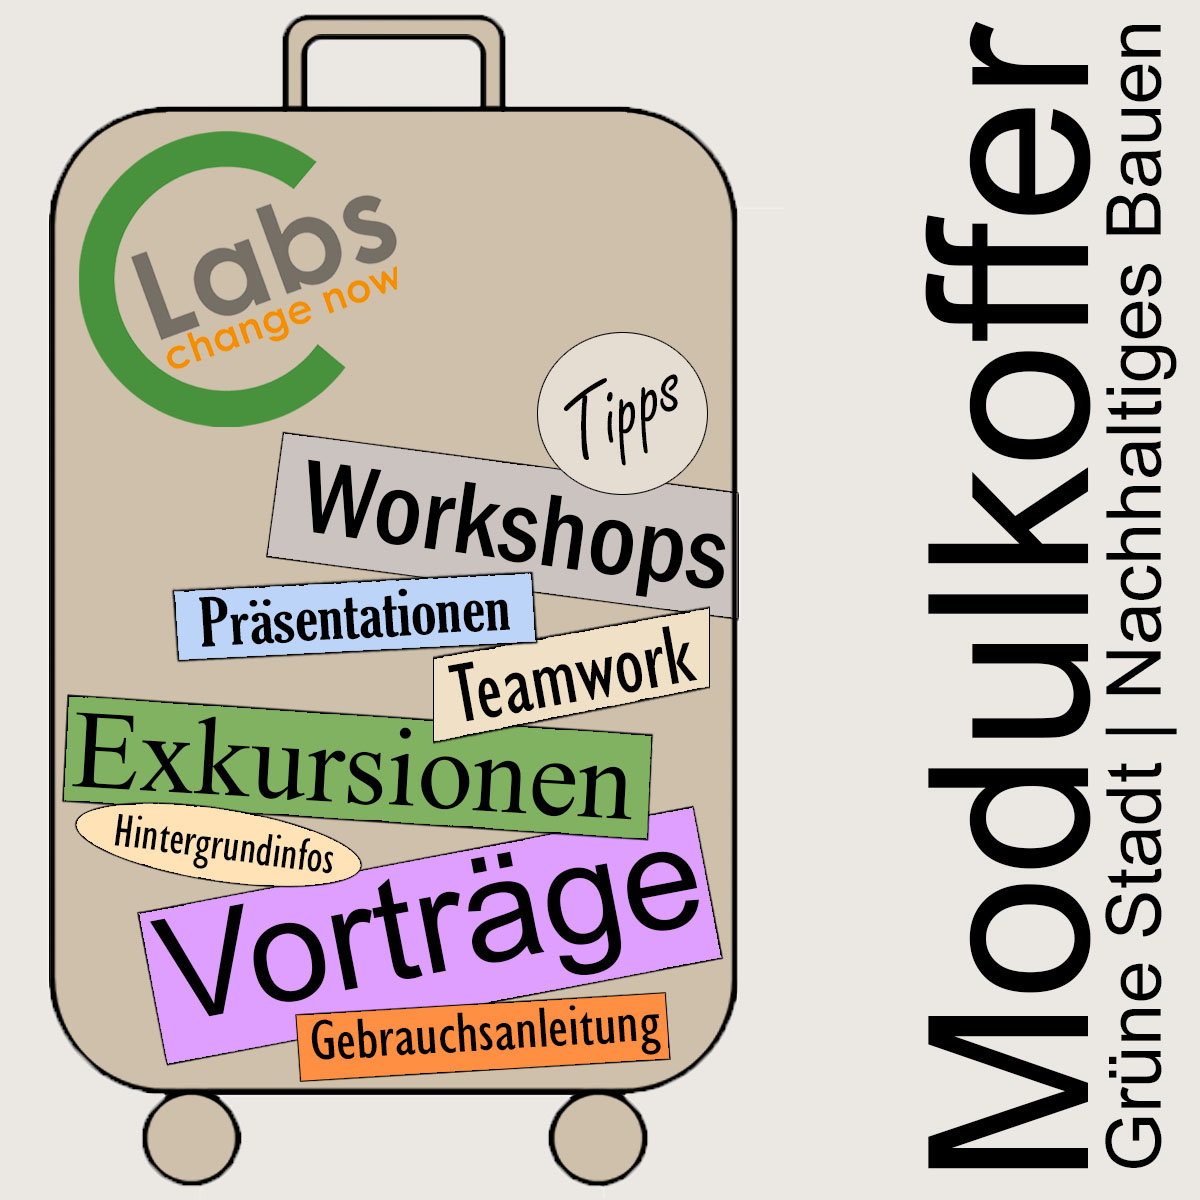 Grafik mit Koffer und Text-Inhalten wie z.B. Vorträge, Workshops, Exkursionen, Teamwork, Tipps, Gebrauchsanleitung